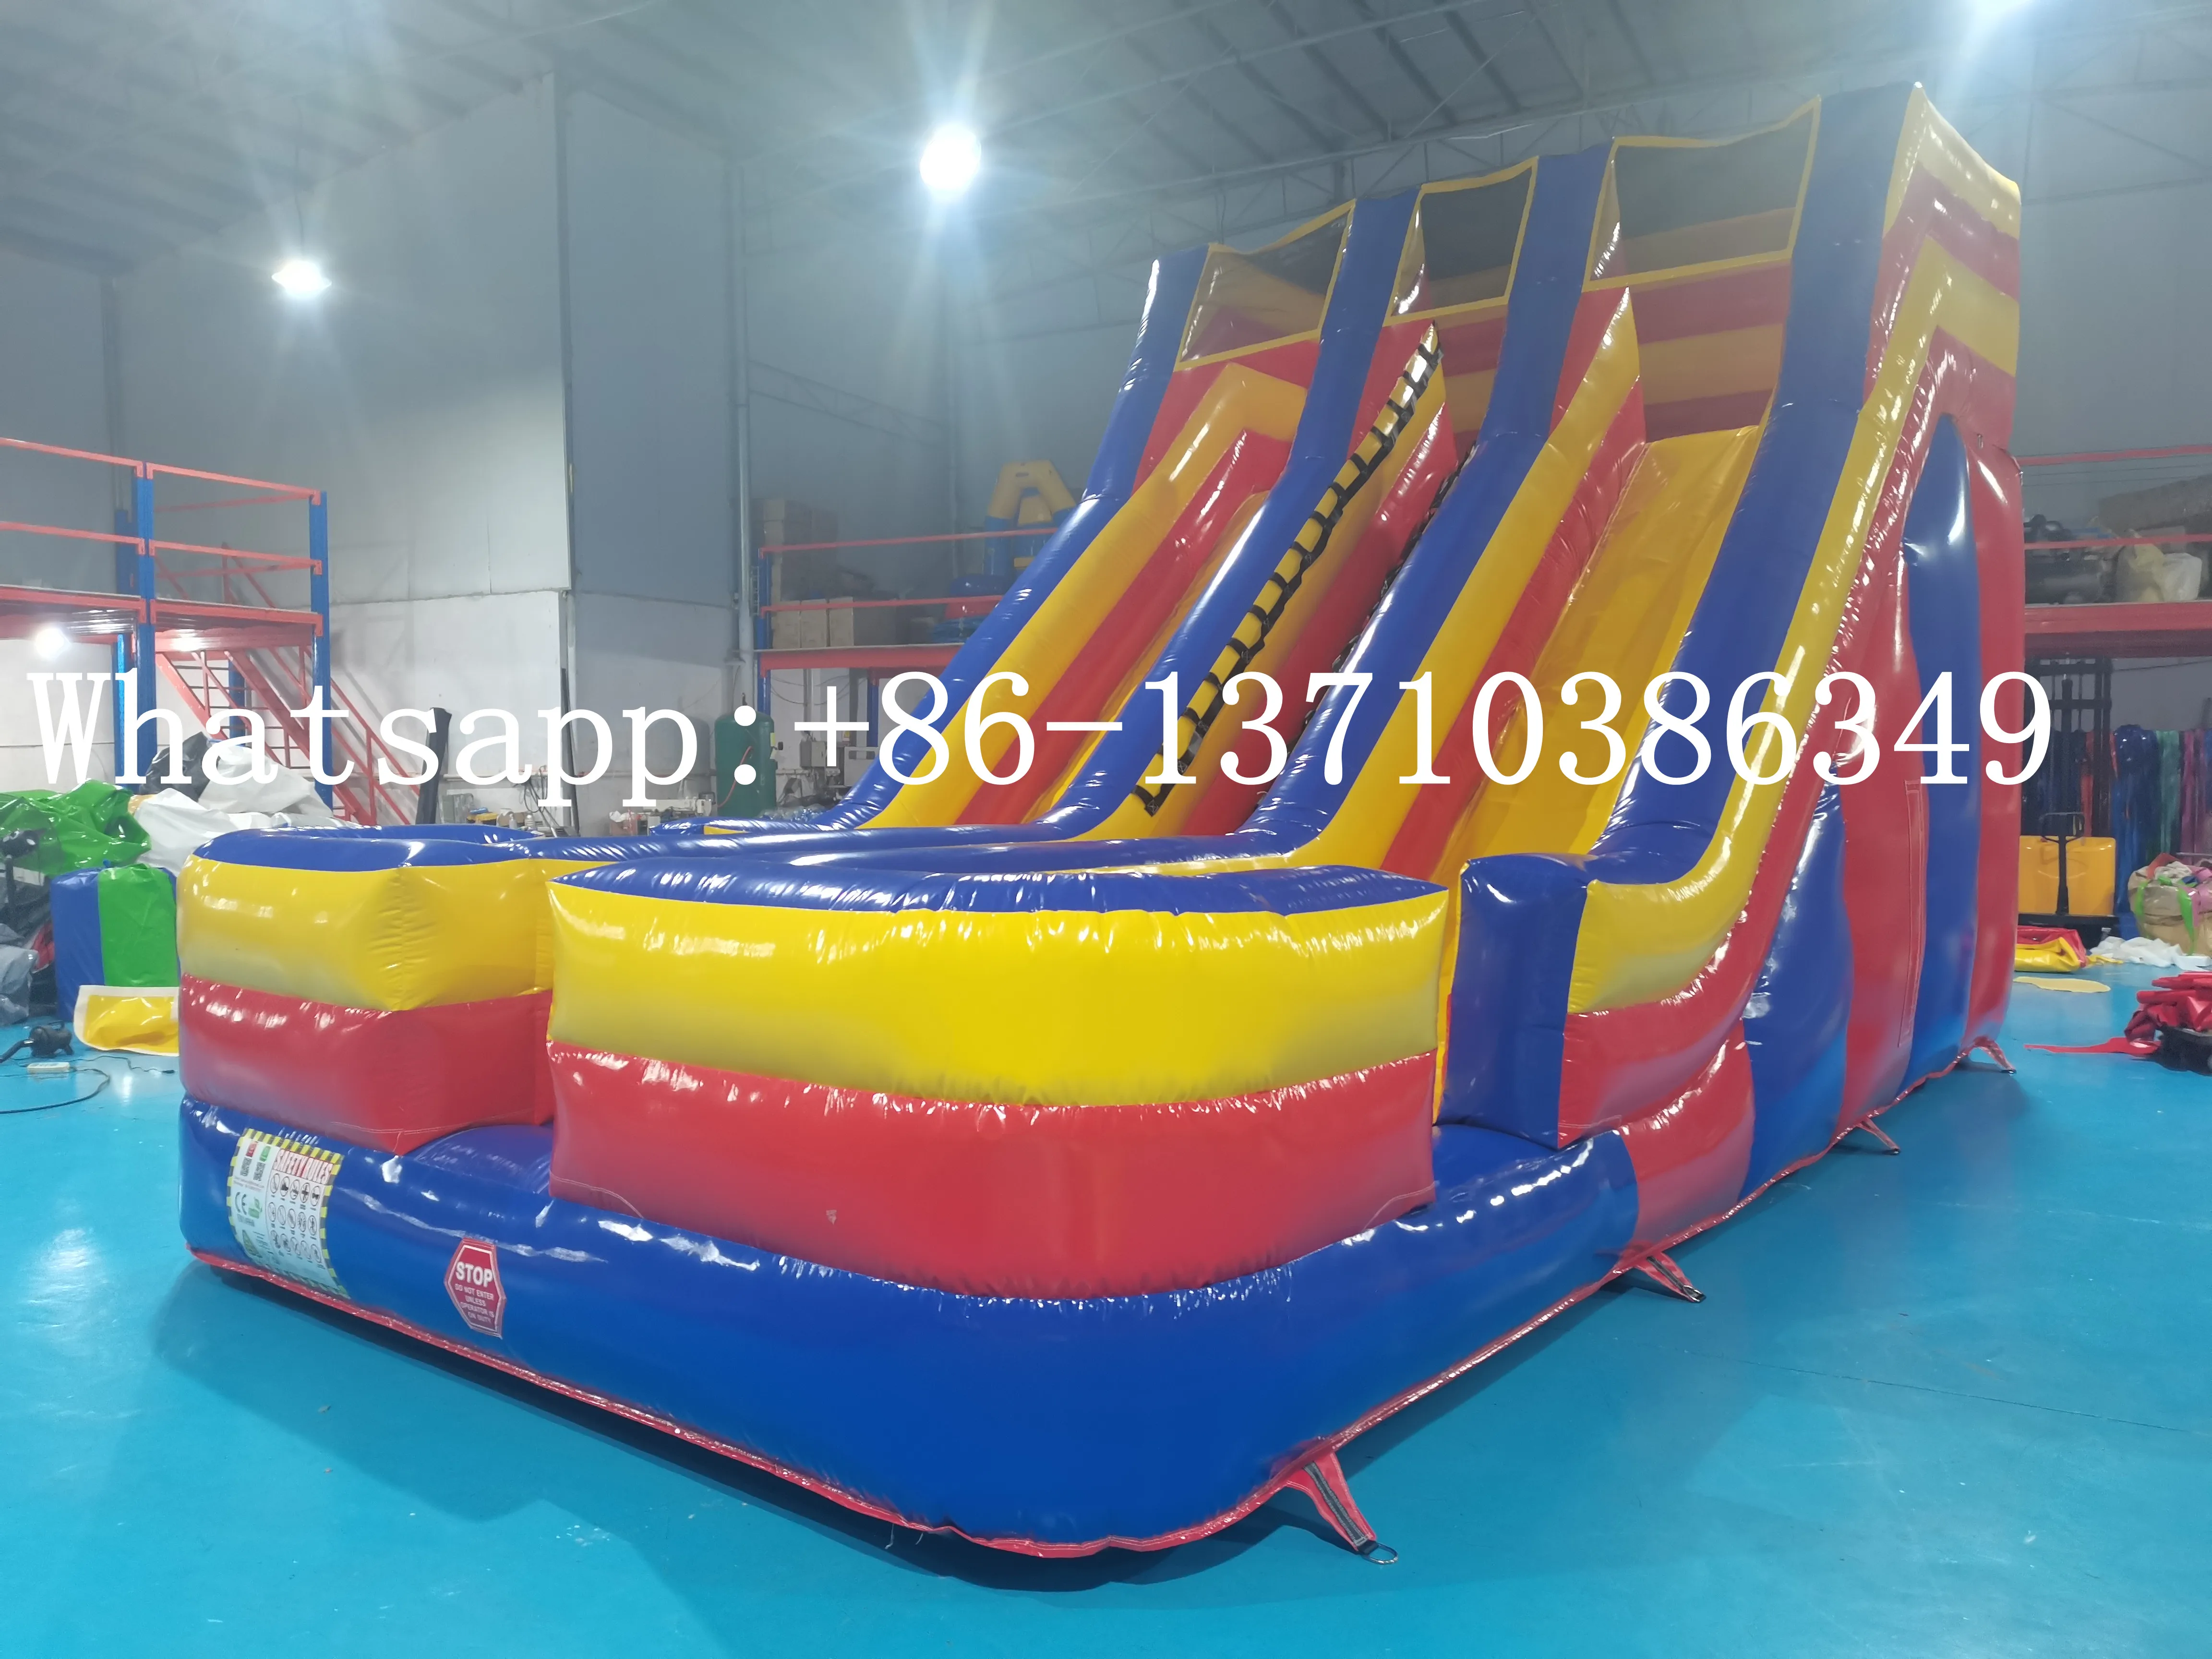 Factory direct sales commercial children's bouncy castle combination slide